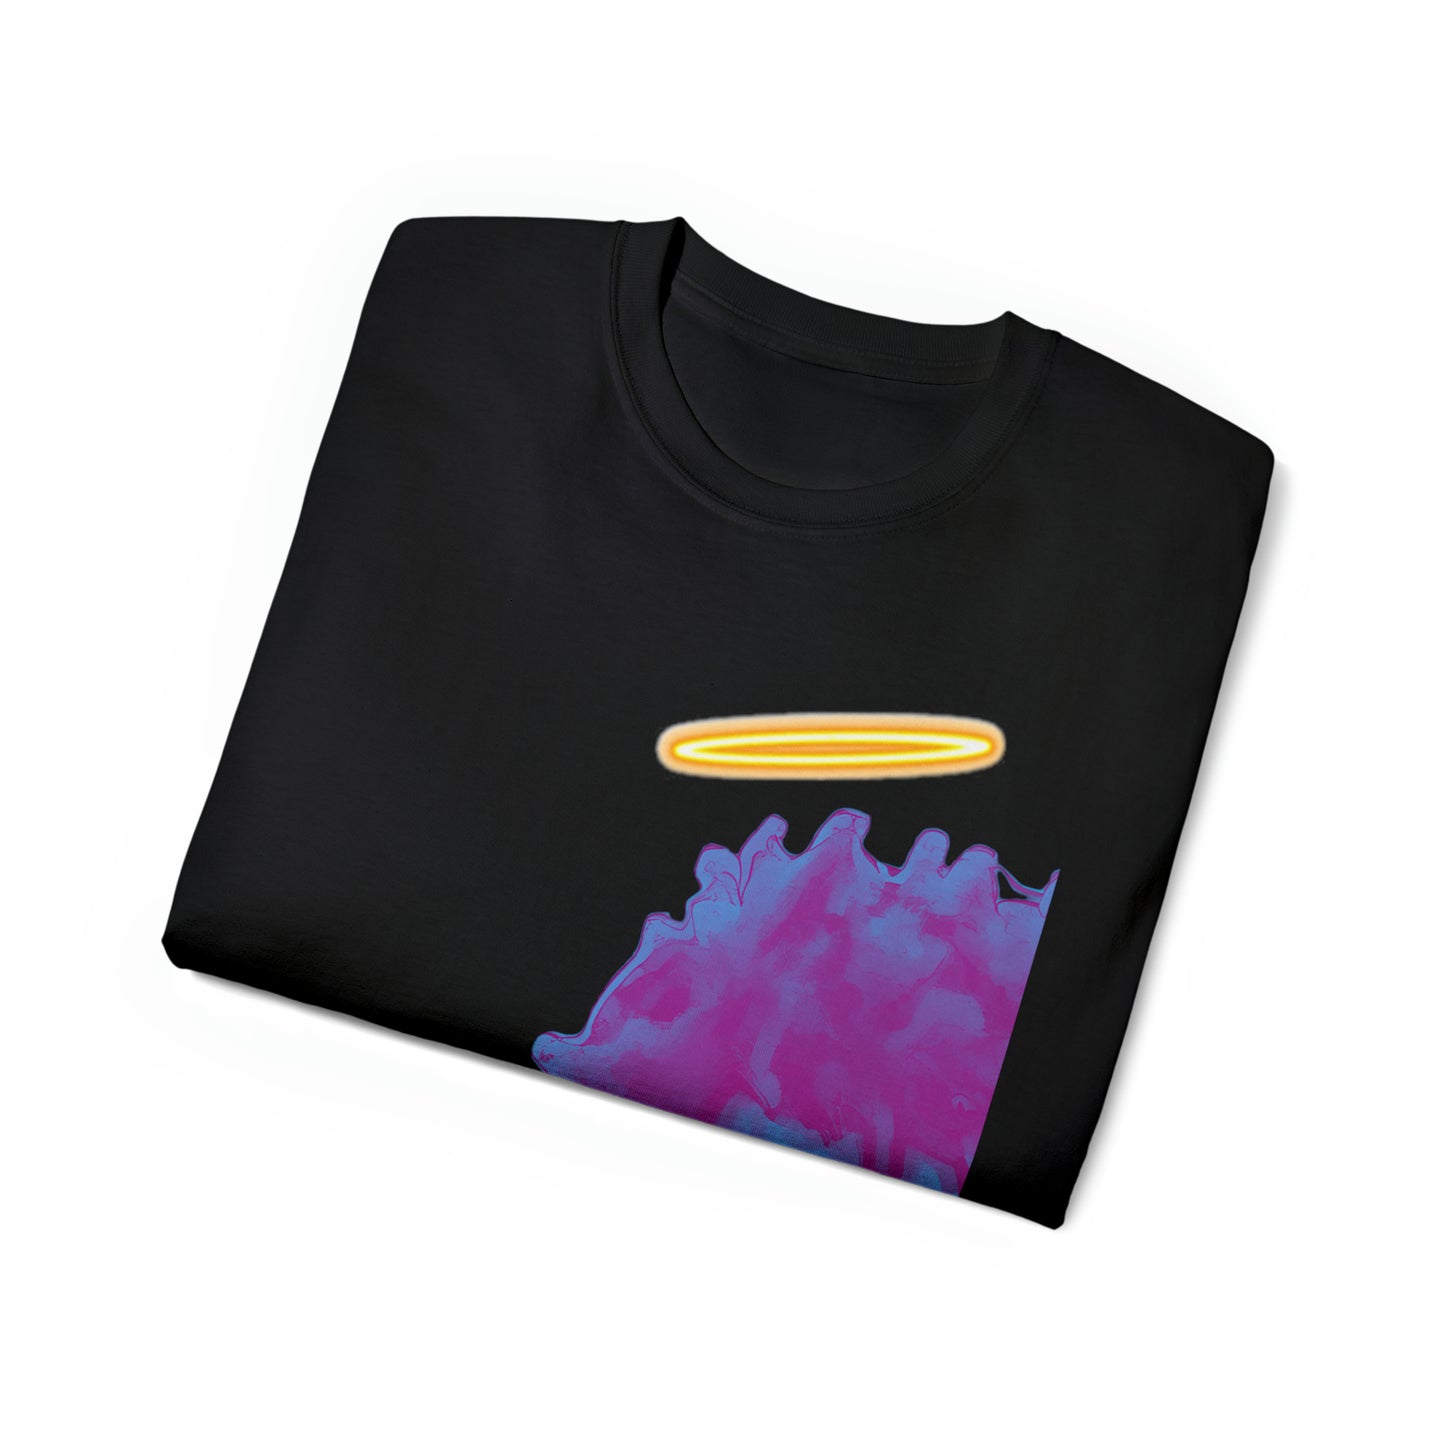 Prophetboy "TOUR" Unisex T-Shirt